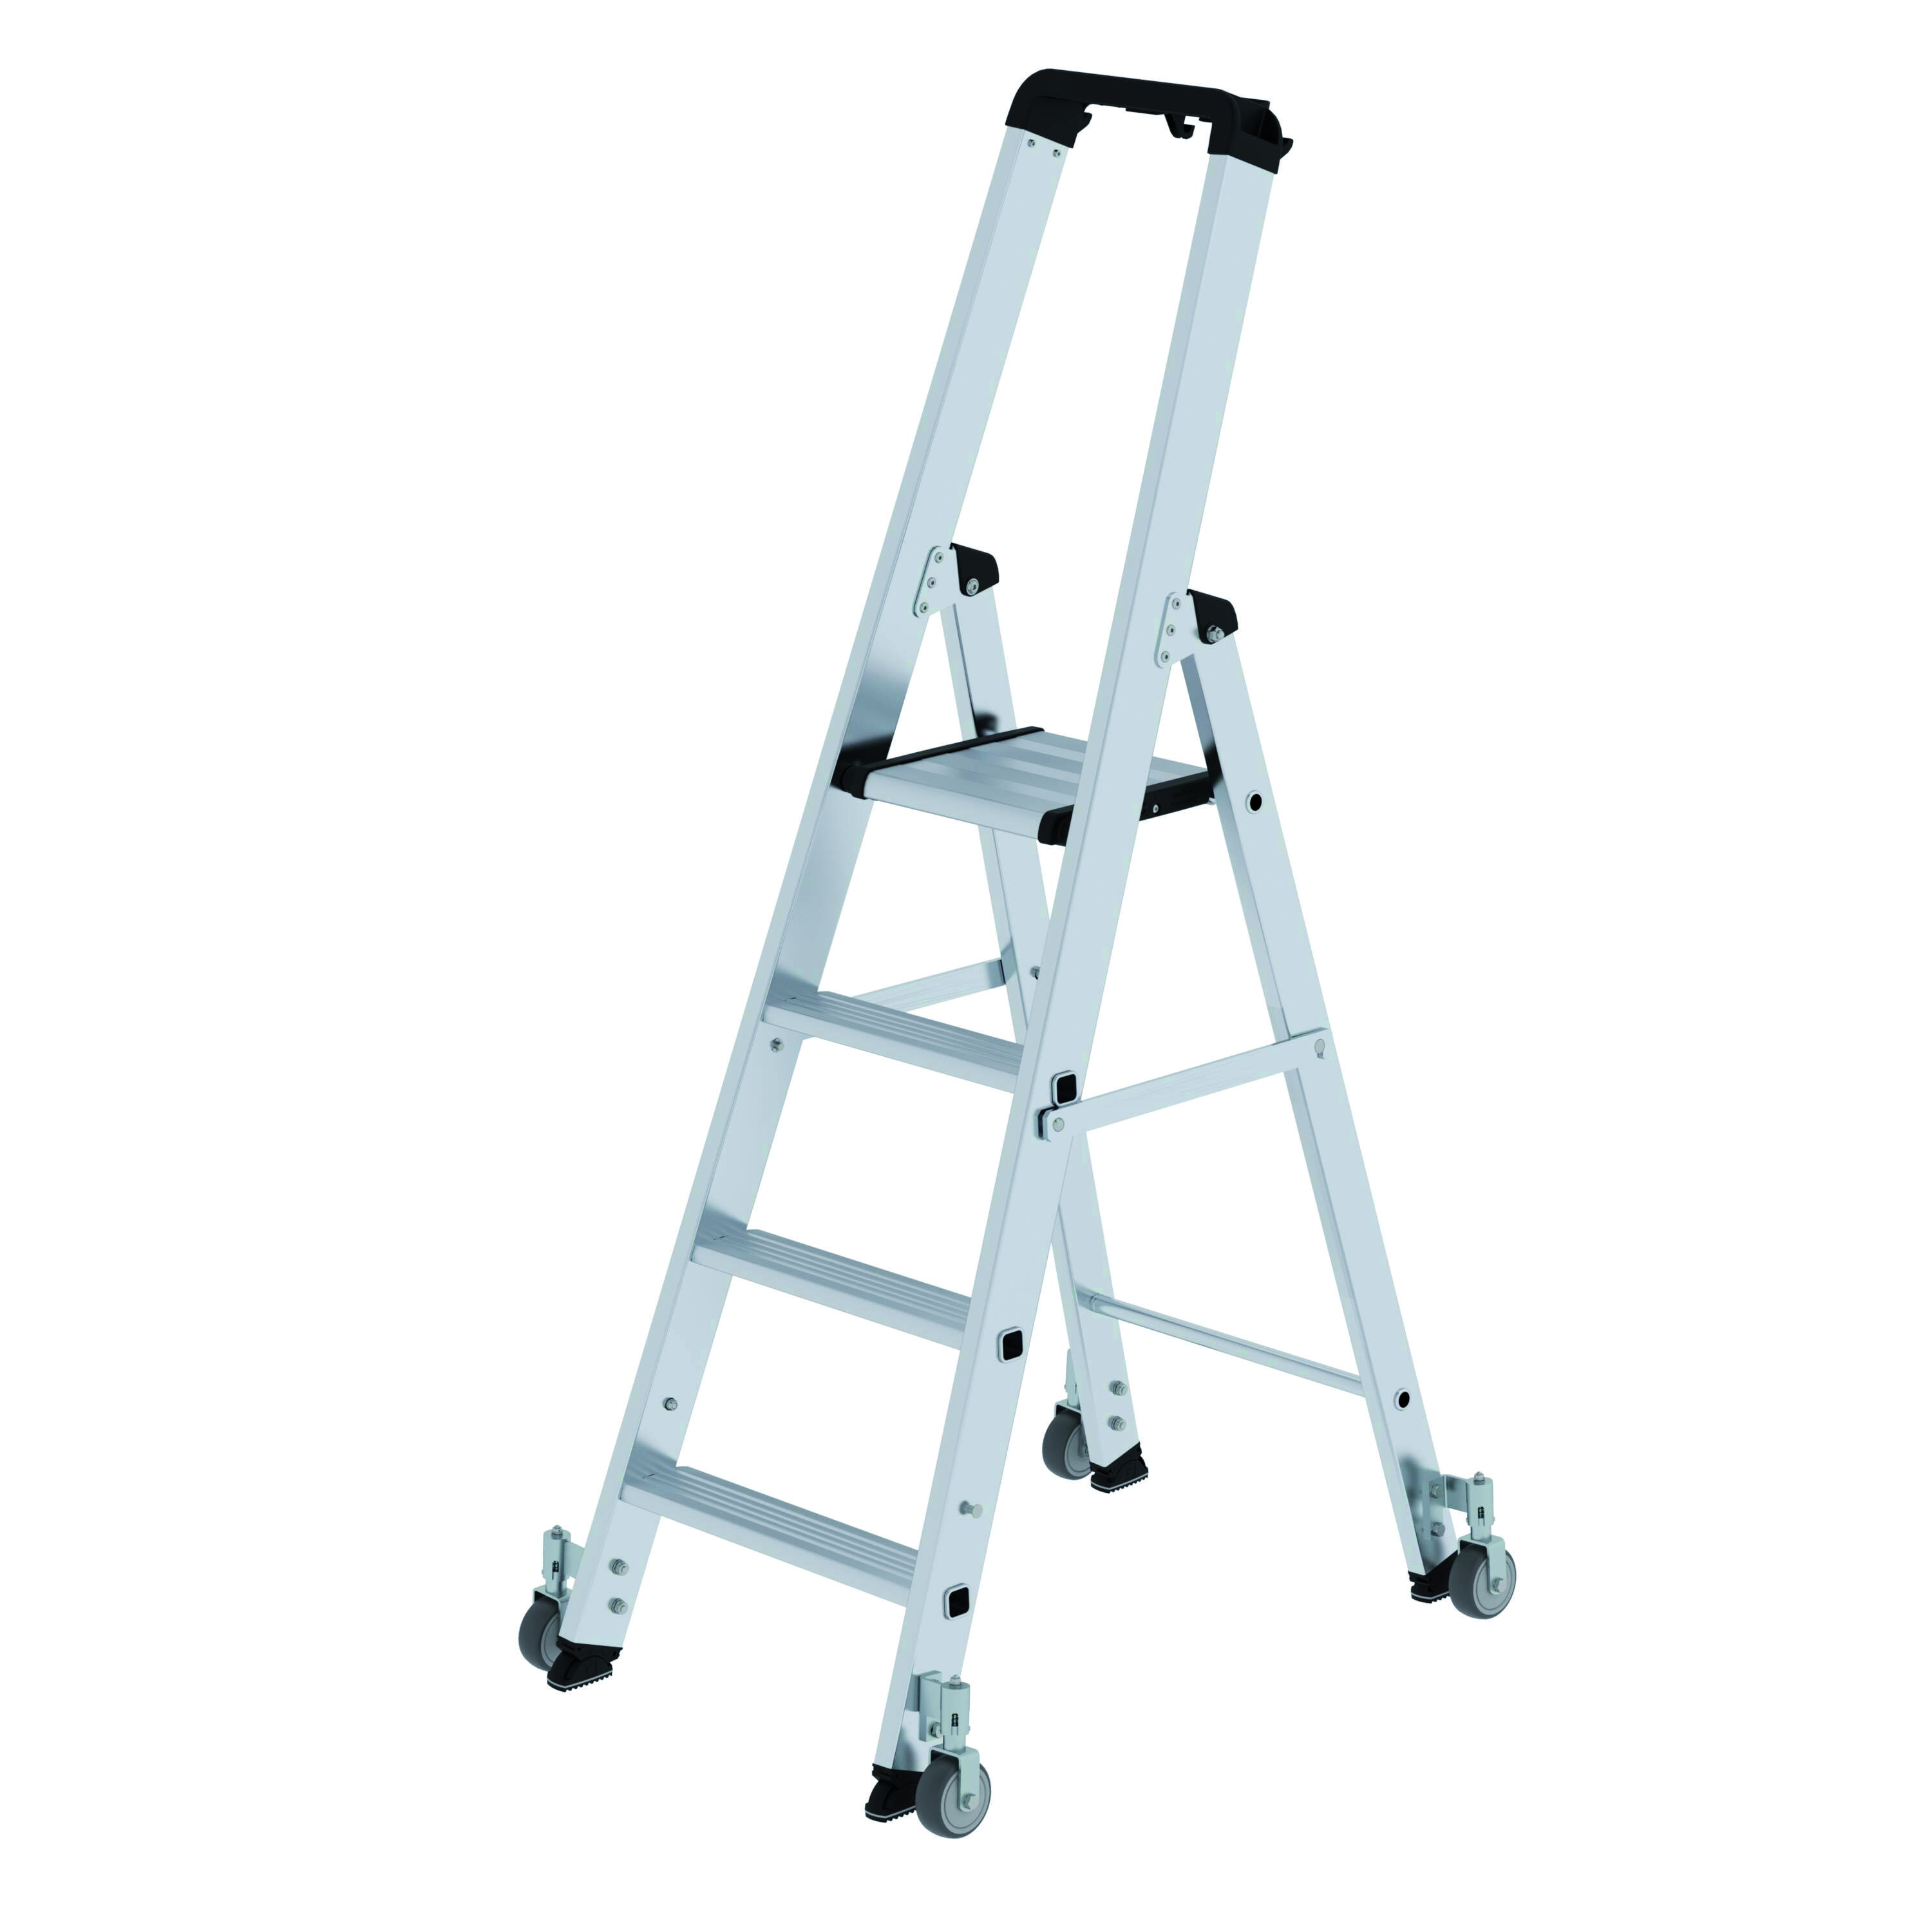 Stufen-Stehleiter einseitig begehbar mit Rollen, 3 Sprossen/Stufen